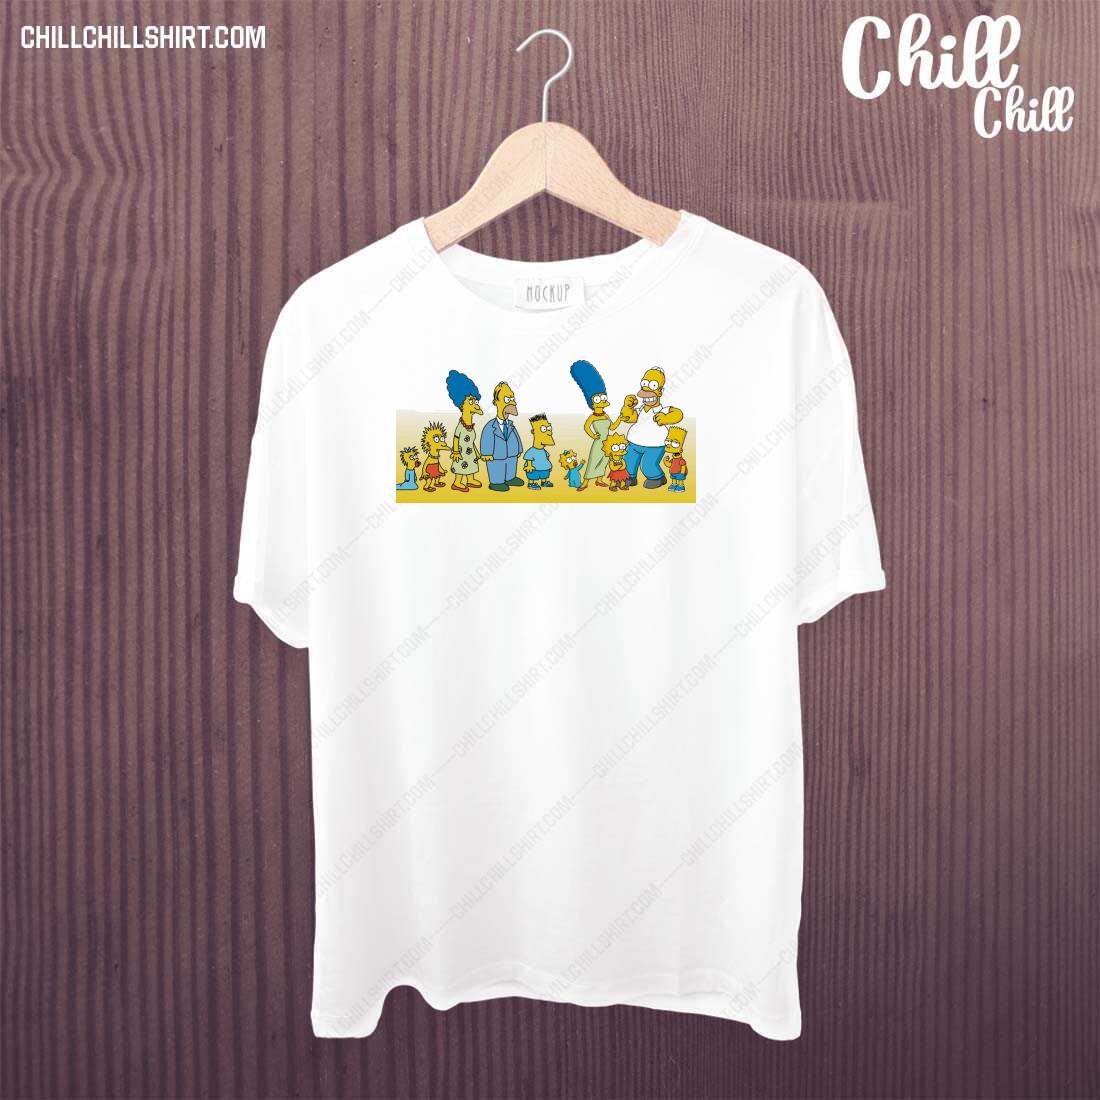 Official cartoon Network Tracey Ullman-era Simpsons T-shirt